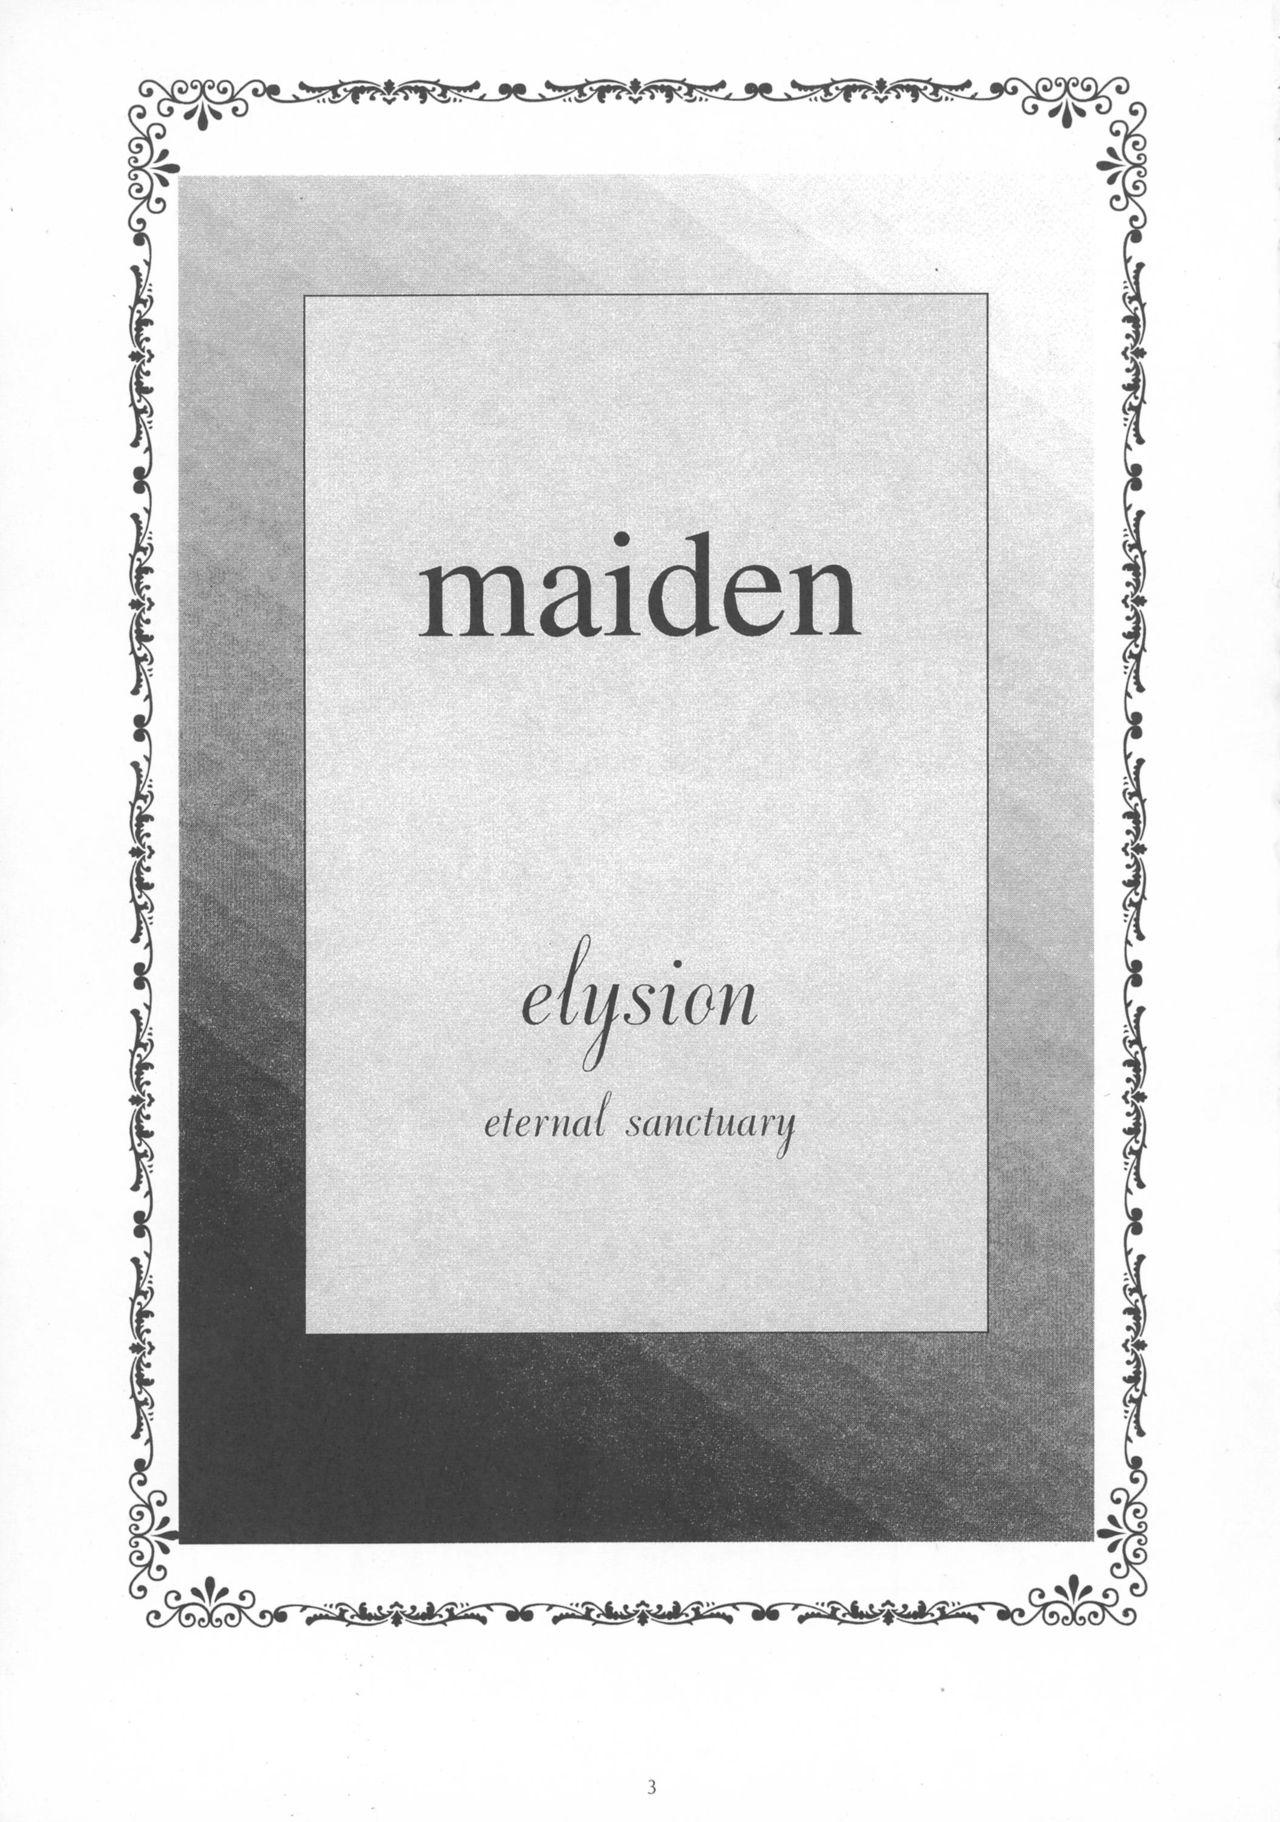 Maiden 2